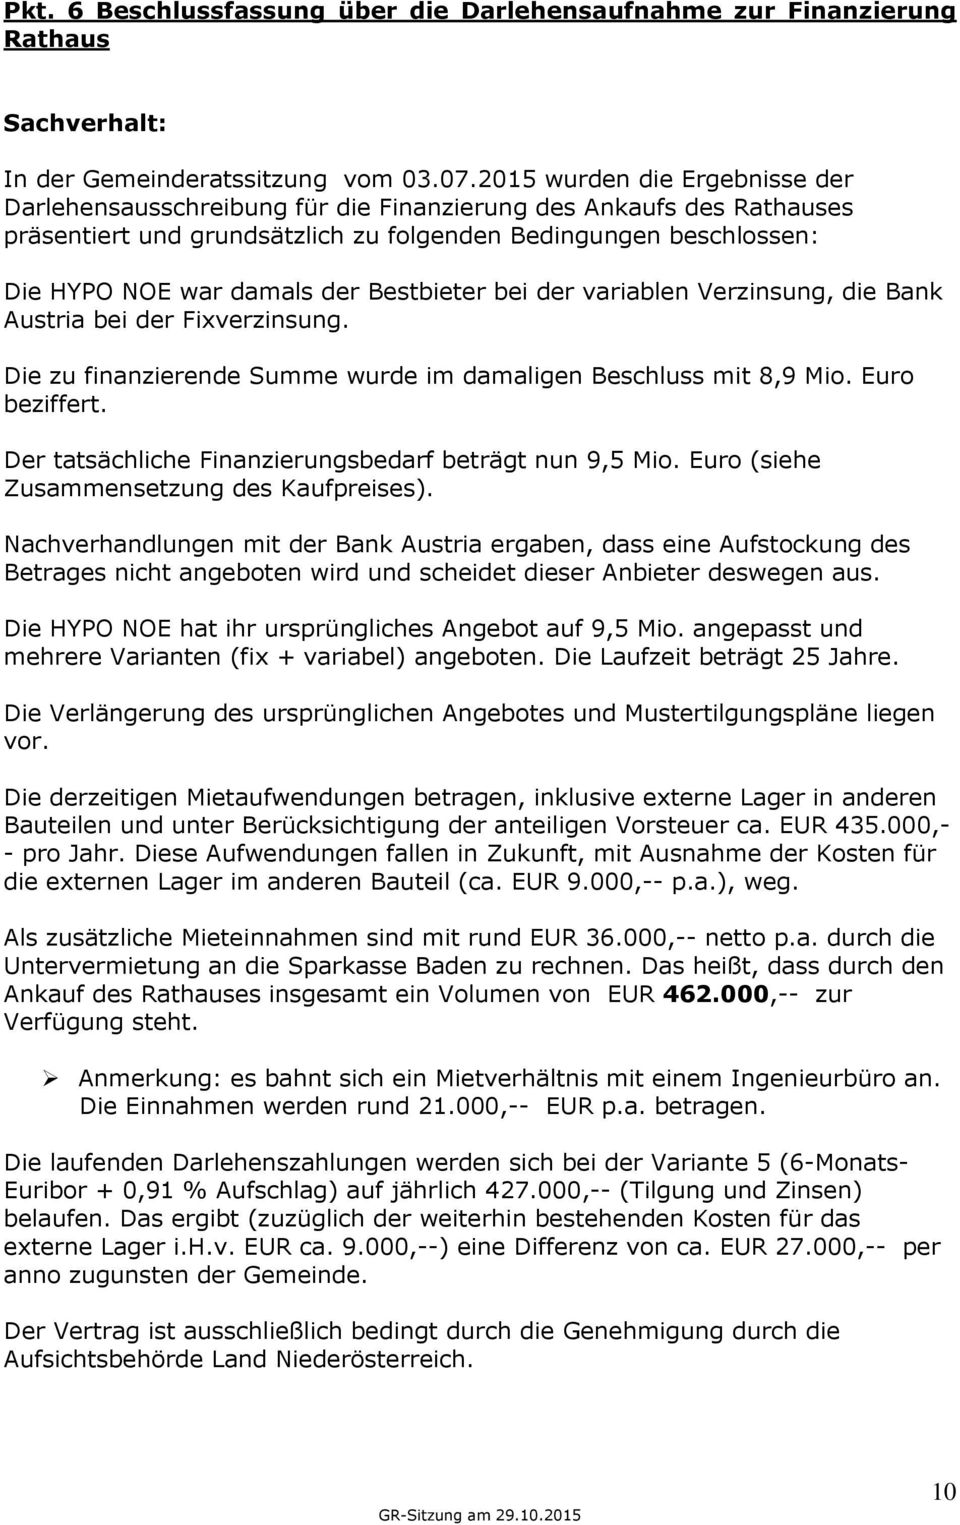 Bestbieter bei der variablen Verzinsung, die Bank Austria bei der Fixverzinsung. Die zu finanzierende Summe wurde im damaligen Beschluss mit 8,9 Mio. Euro beziffert.